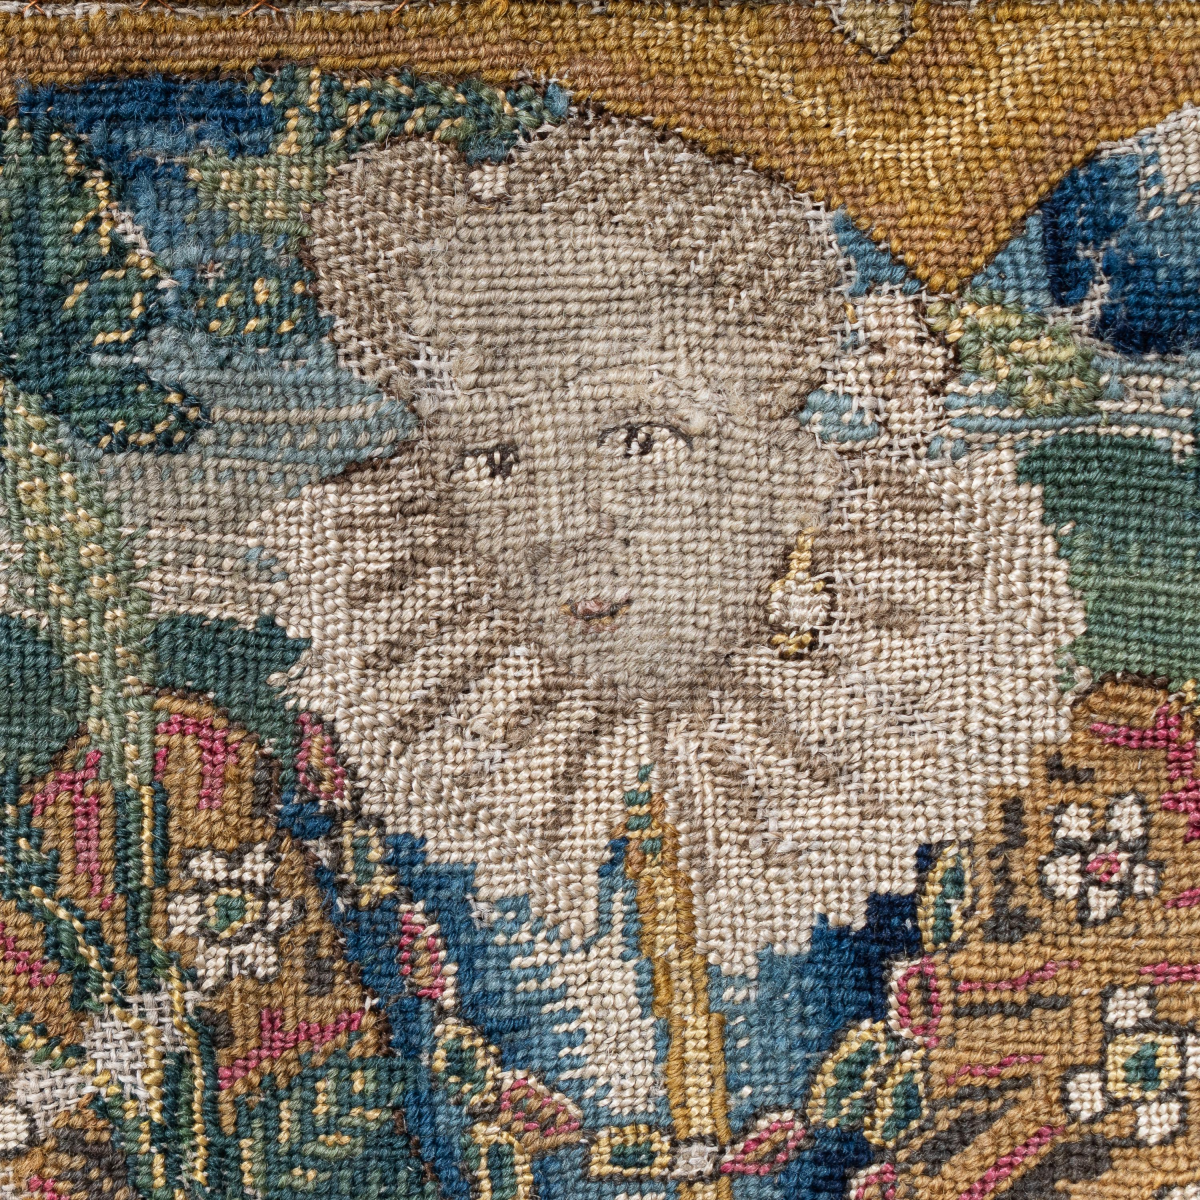 Elizabeth I / James I needlework panel, circa 1600